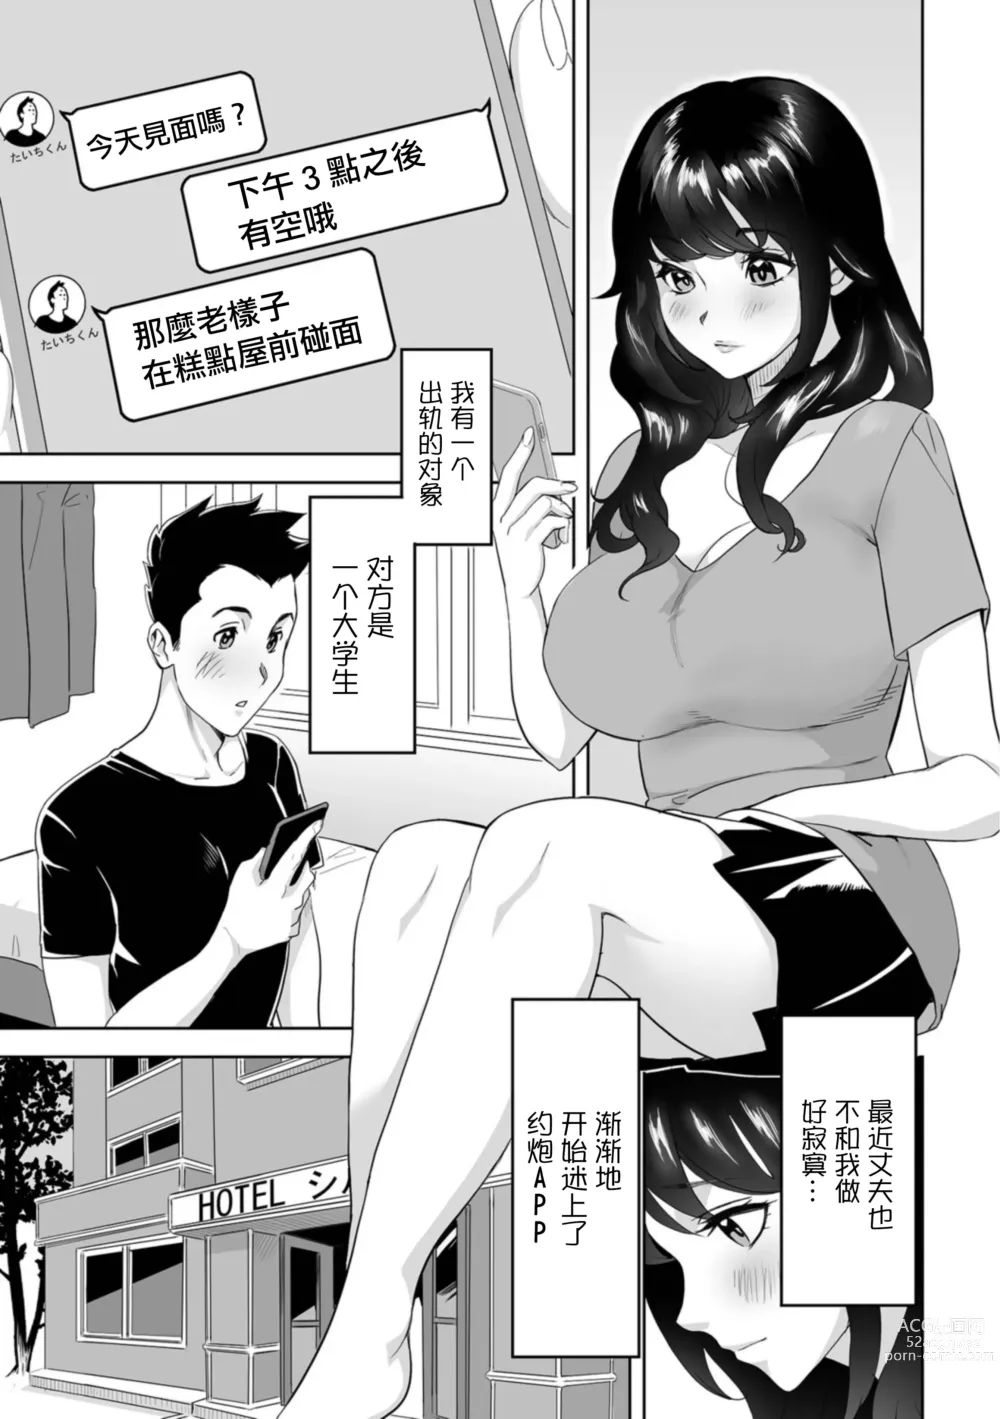 Page 2 of manga Oku-san no Nama Matching